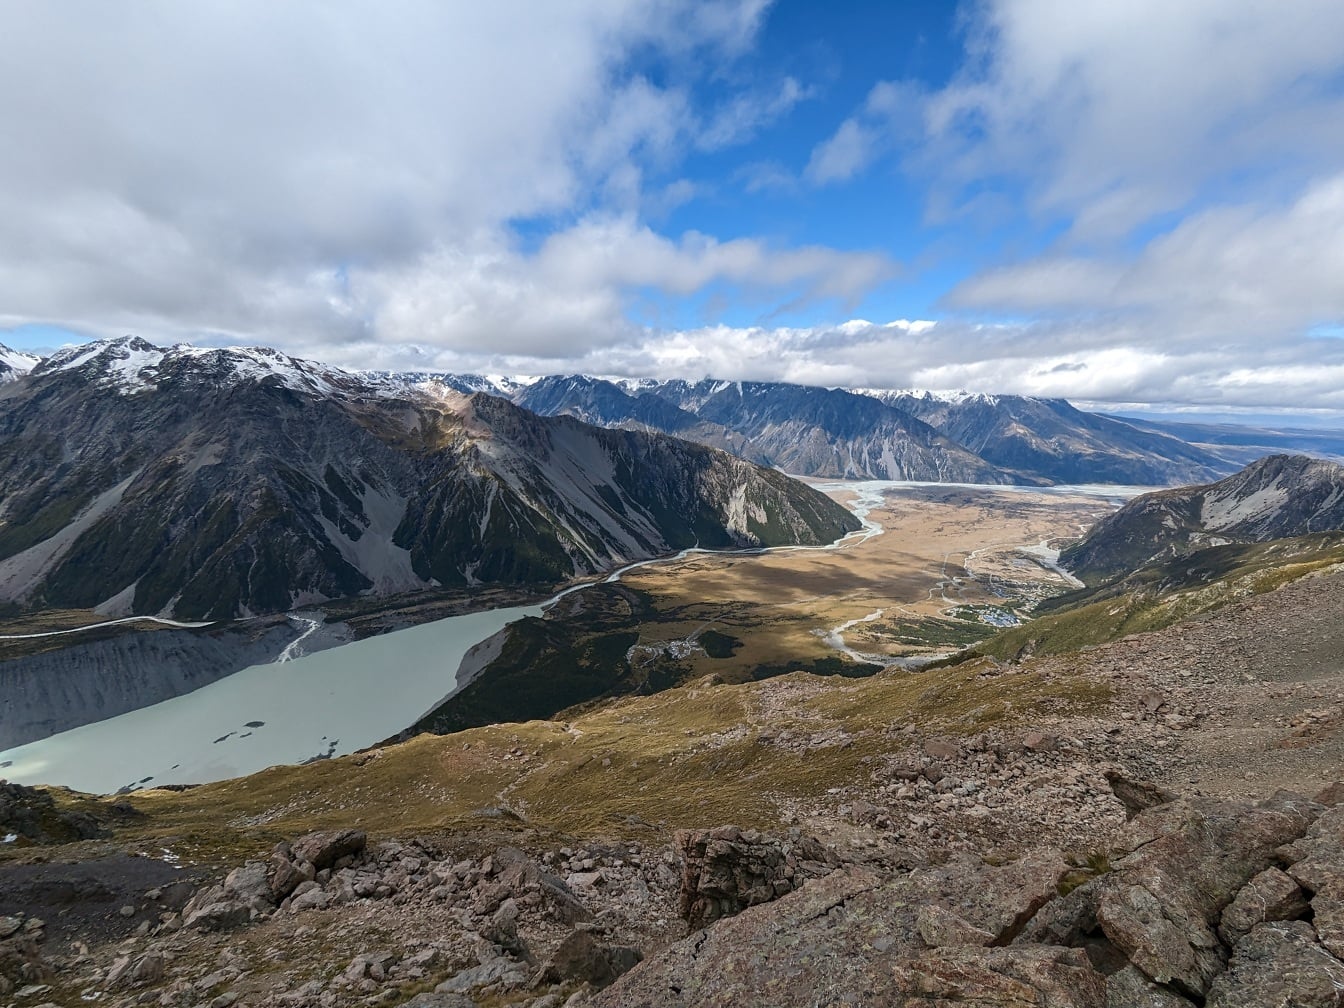 Lereng gunung yang megah dengan danau di lembah dan pegunungan gletser di latar belakang